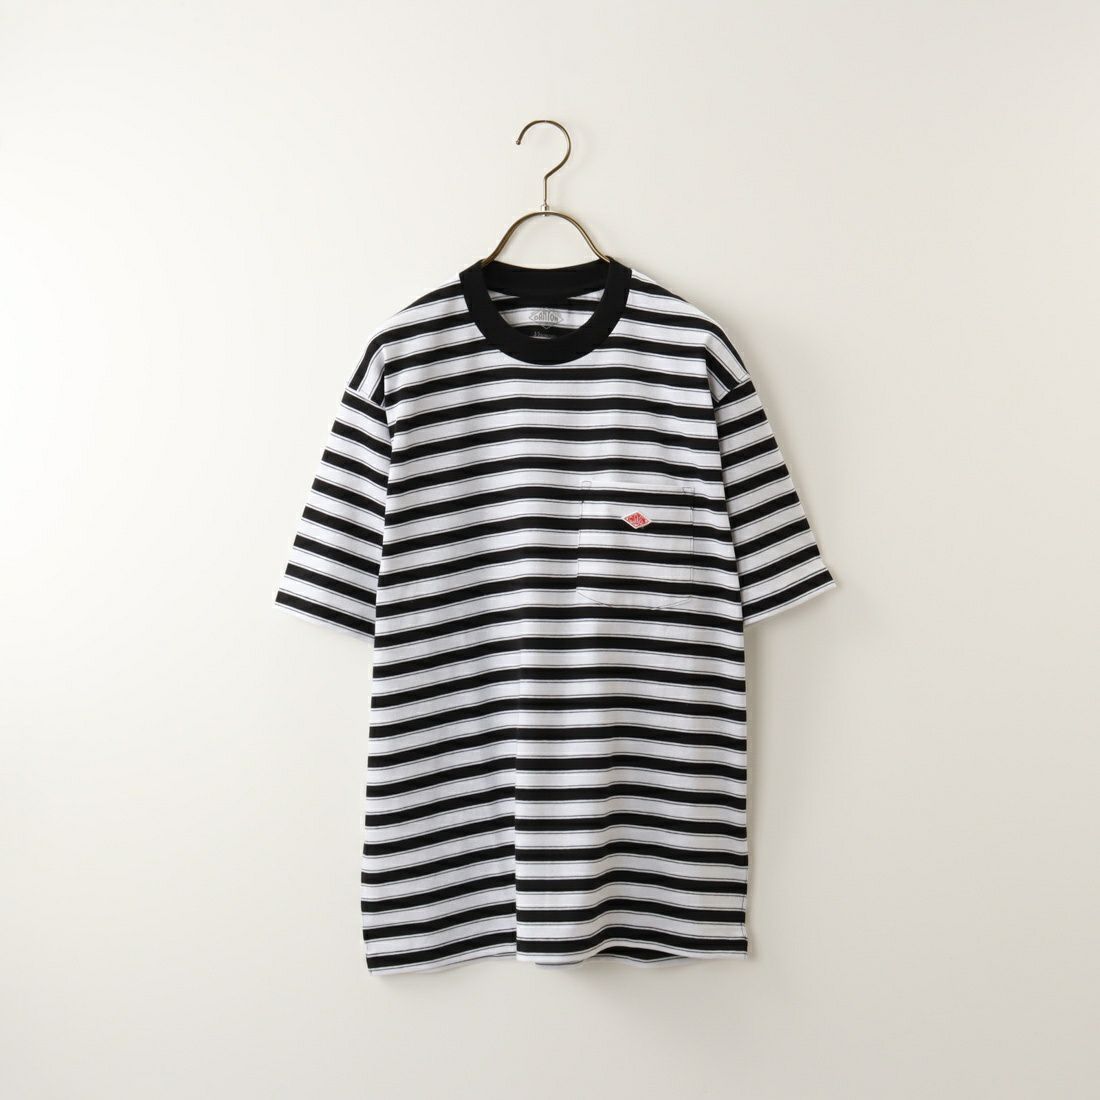 DANTON [ダントン] 半袖ポケットTシャツ [DT-C0198TCB] BLACK/WHIT